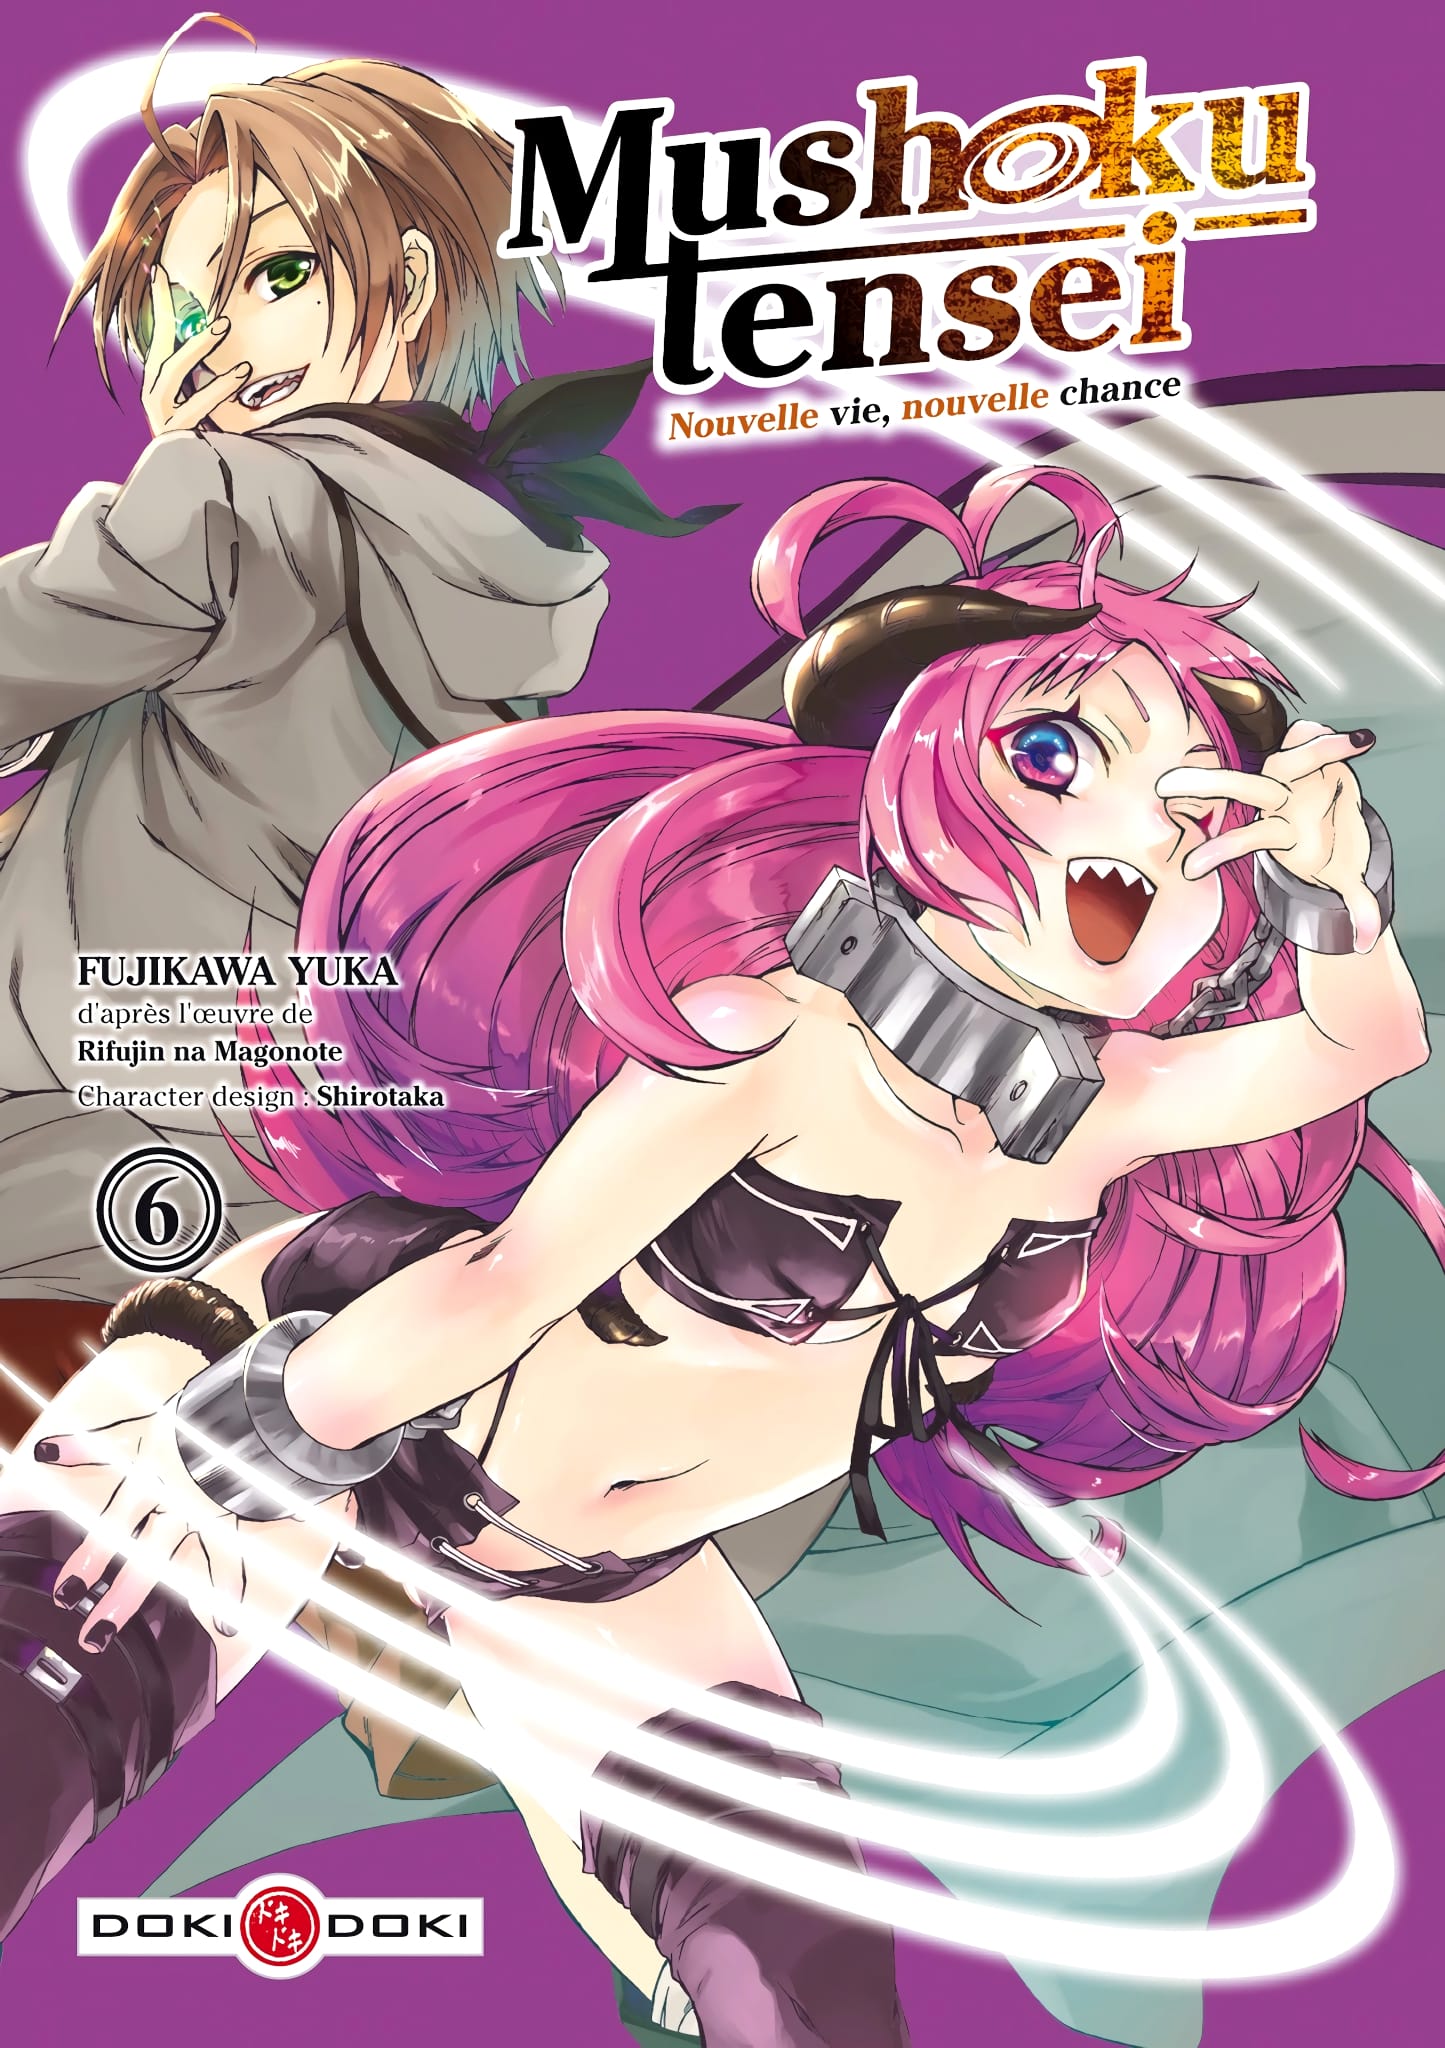 Tome 6 du manga Mushoku Tensei